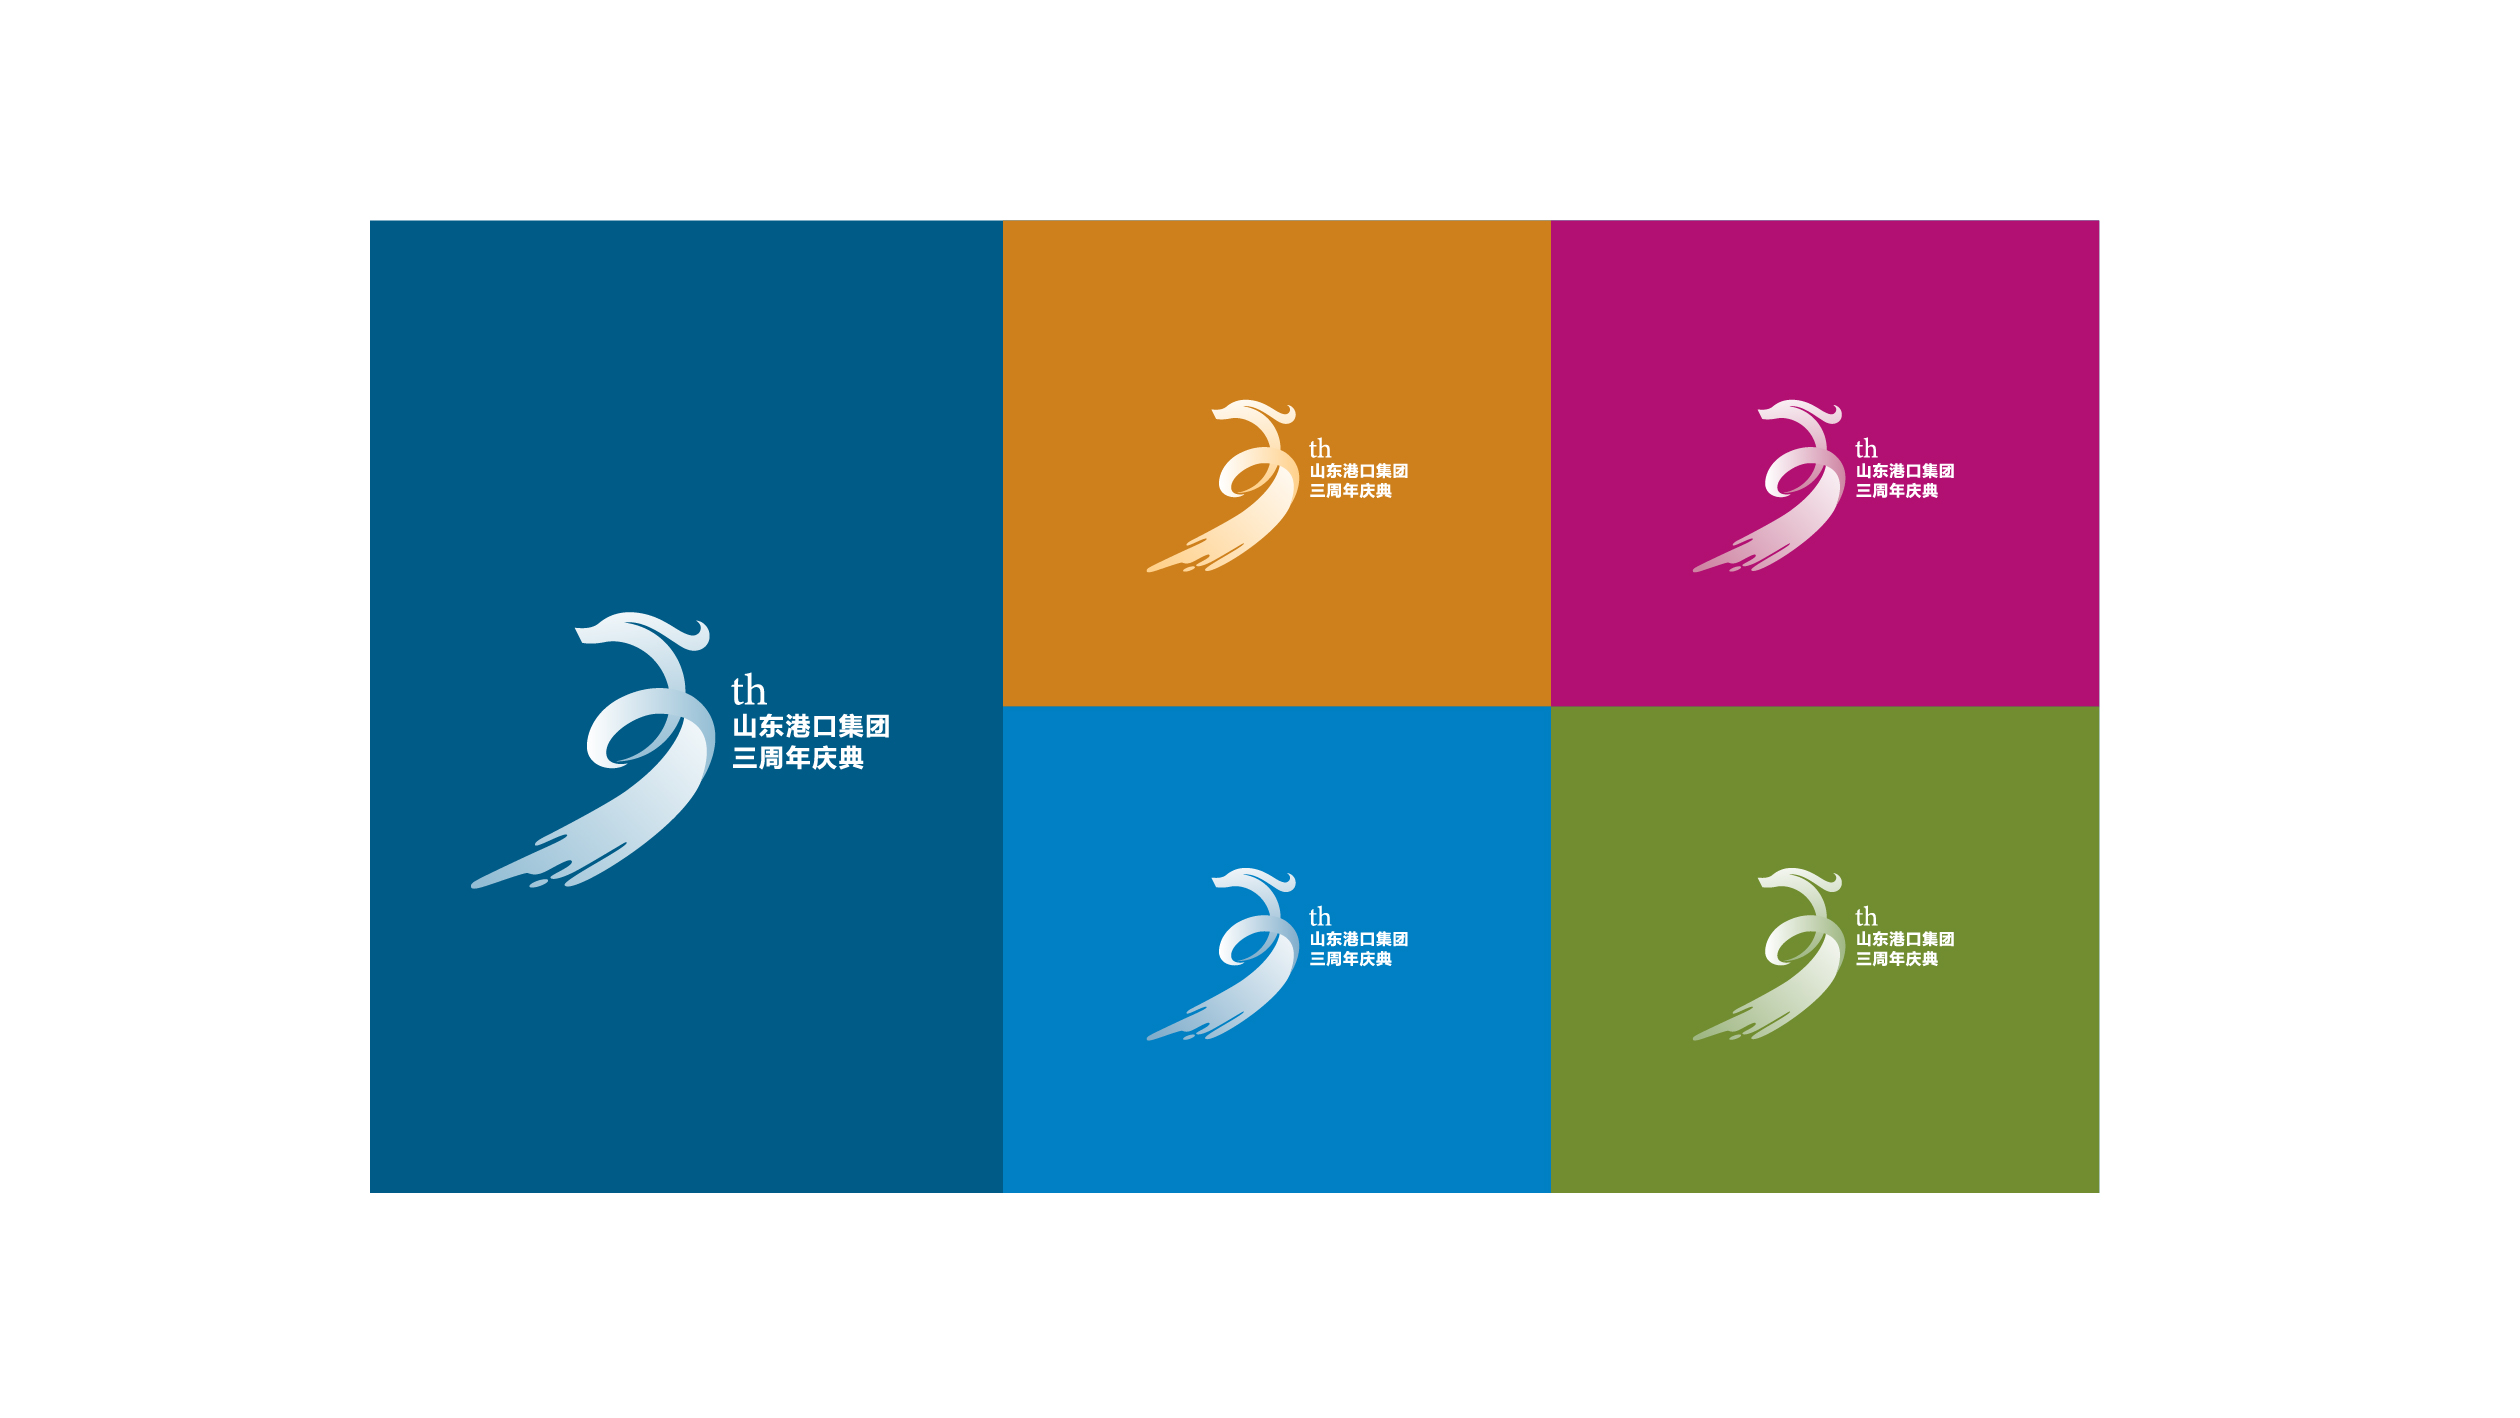 山东港口集团logo高清图片